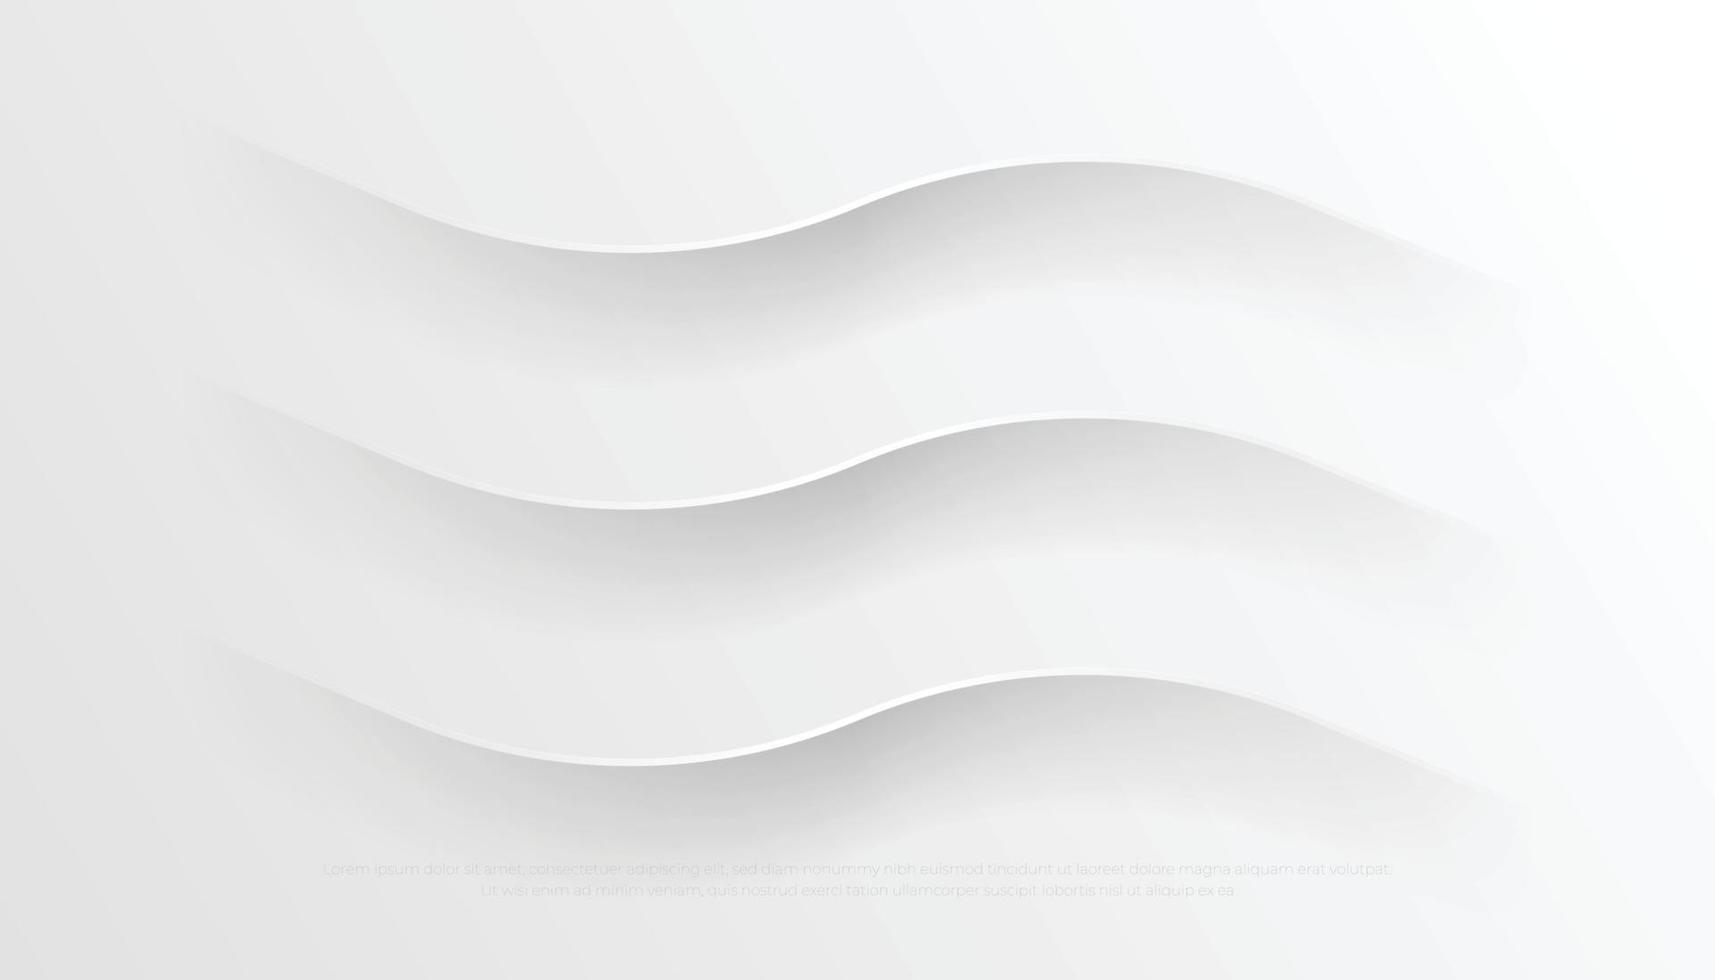 fondo moderno abstracto blanco gris con líneas plateadas claras. Ilustración de vector de diseño geométrico futurista creativo